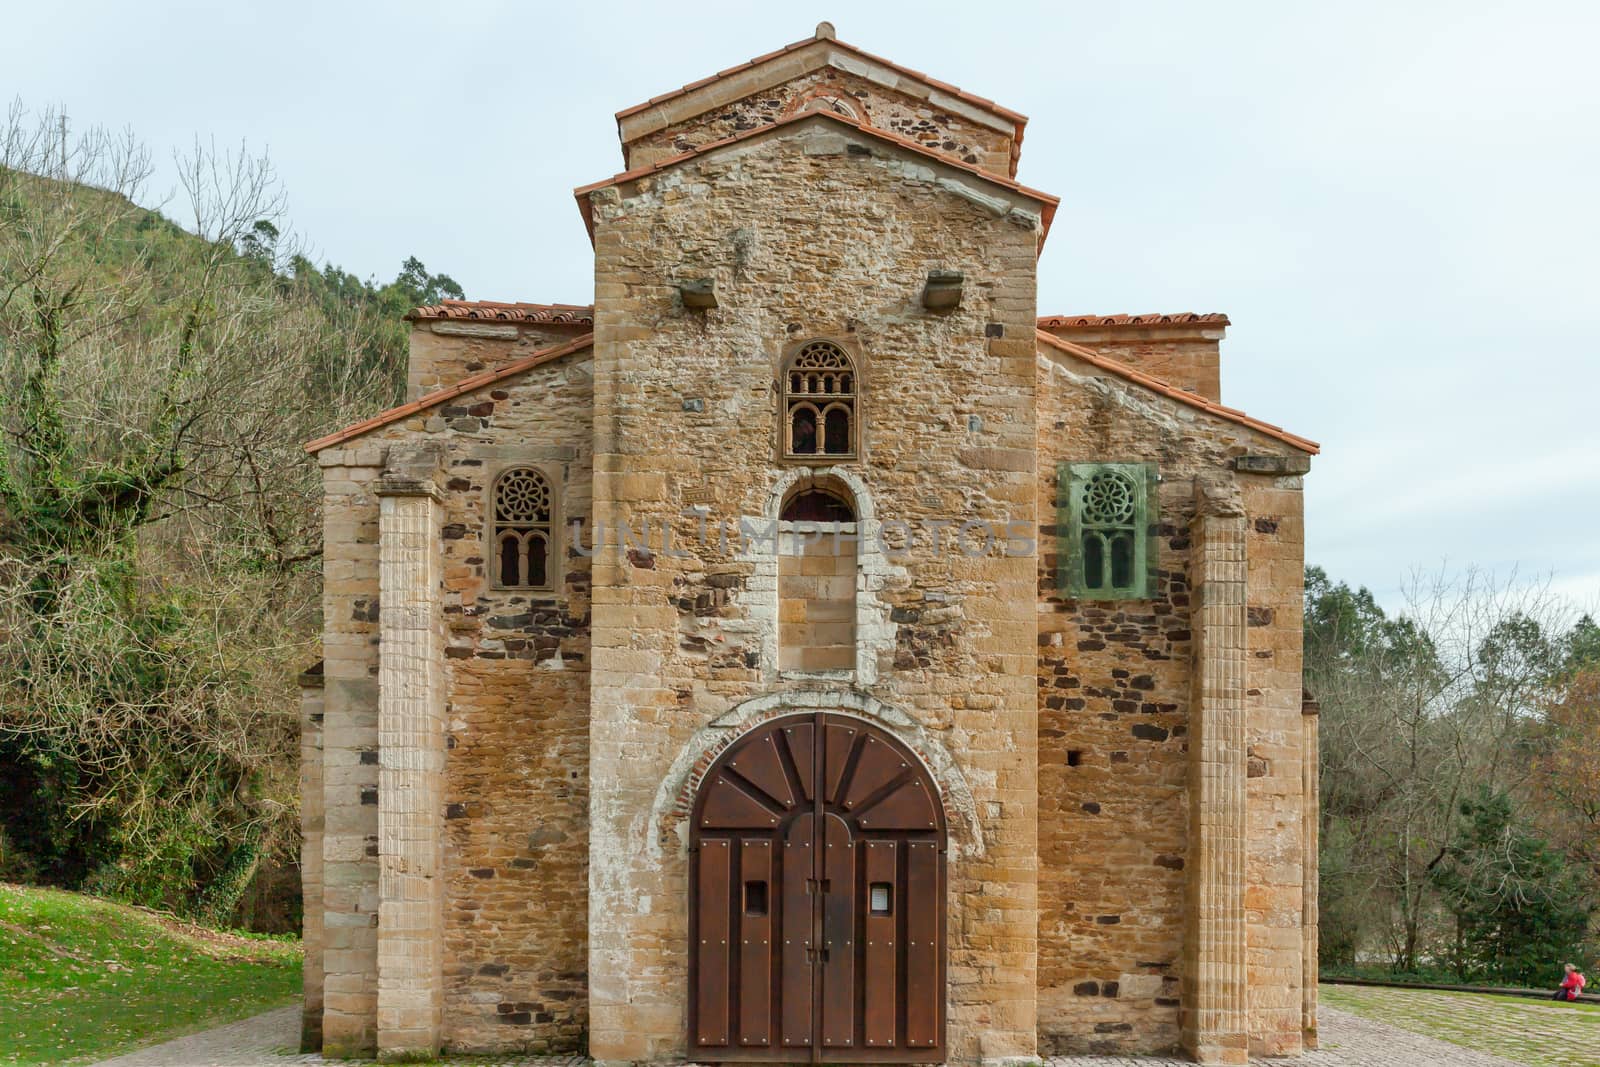 Church of San Miguel de Lillo, Oviedo, Spain by vlad-m